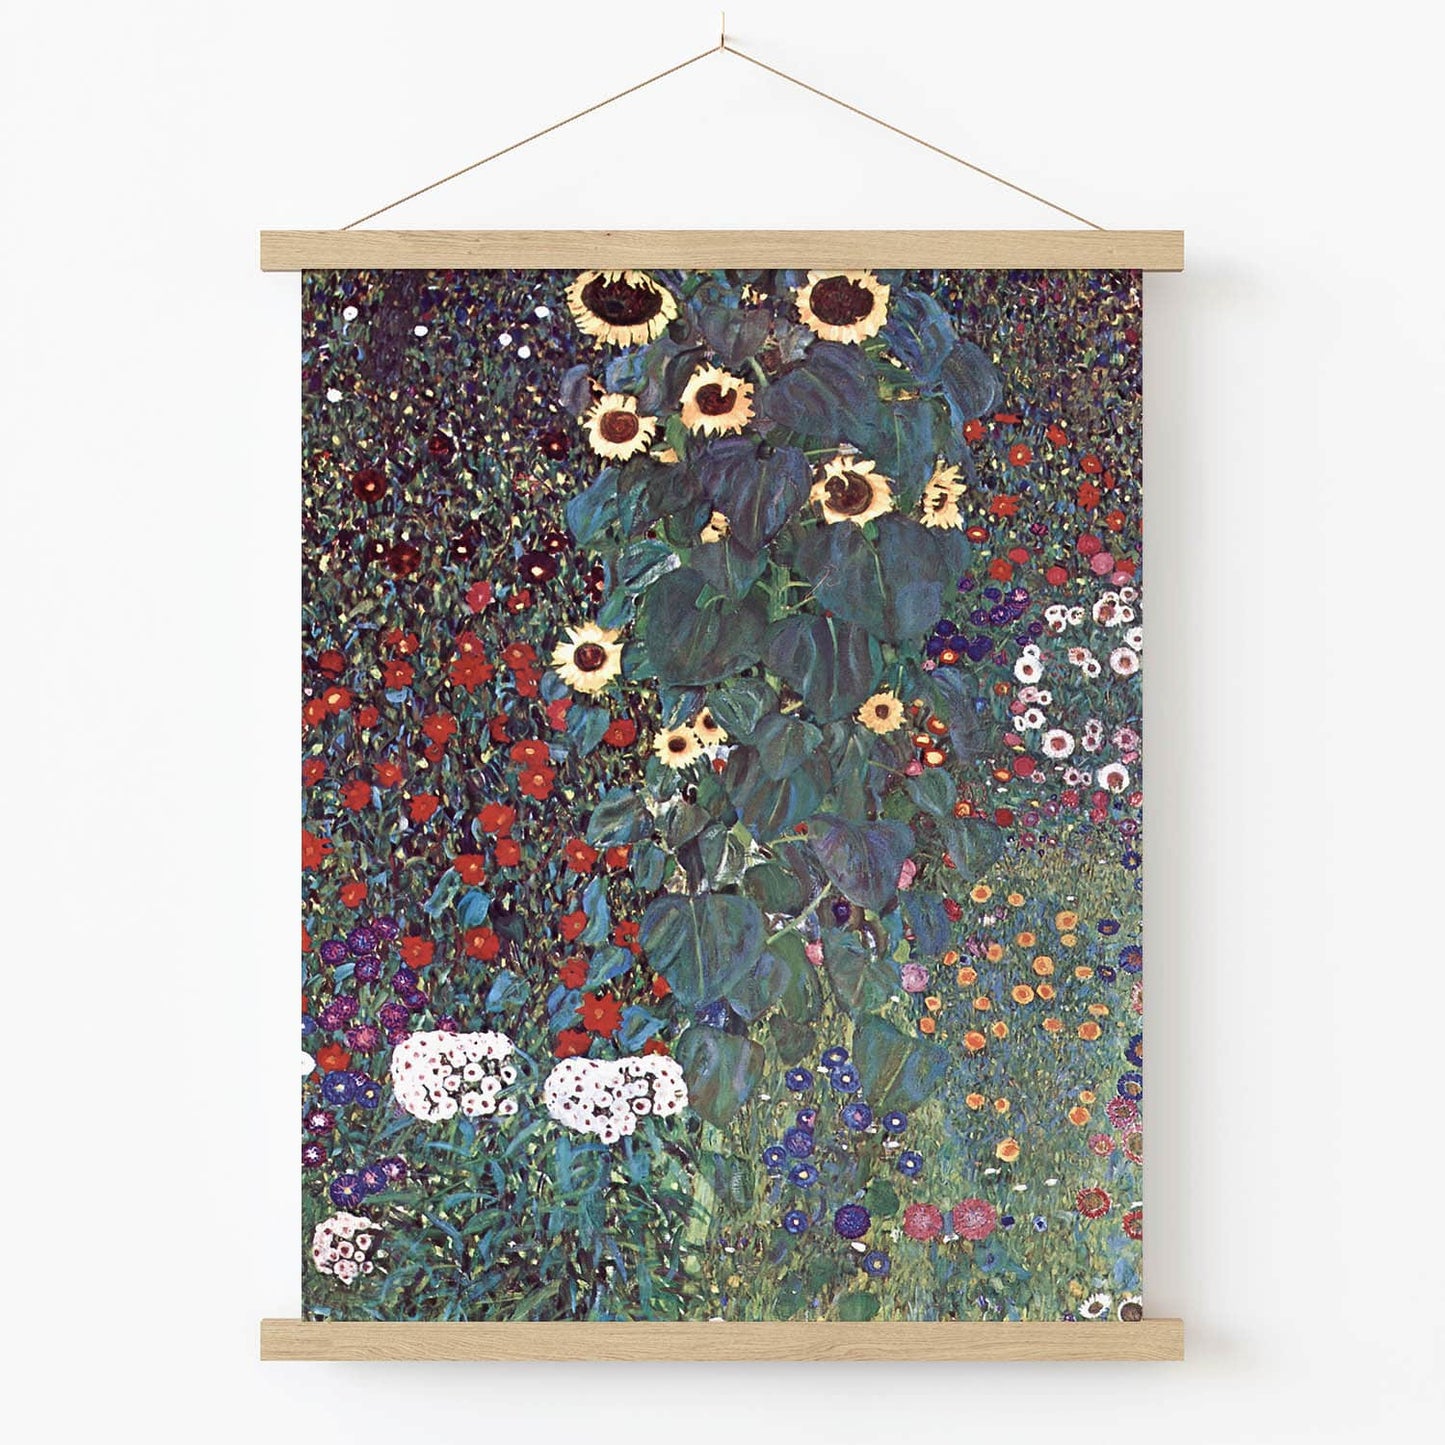 Boho Flower Painting Art Print in Wood Hanger Frame on Wall